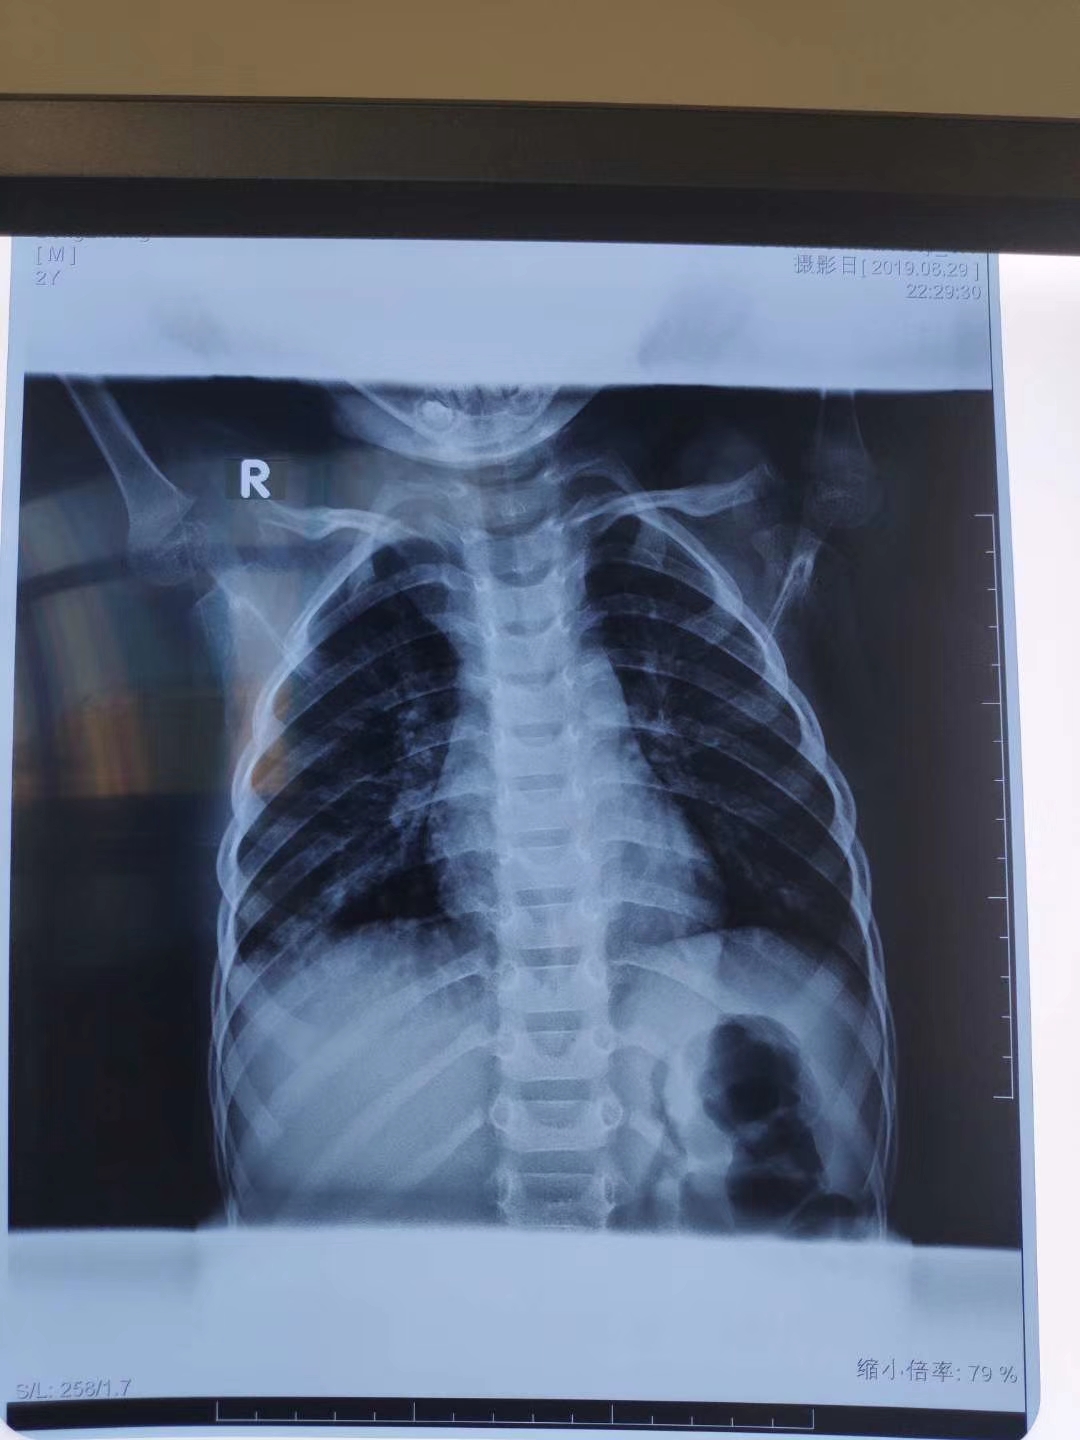 肺炎孩子胸片提示胸腔积液,但进一步检查却消失了?